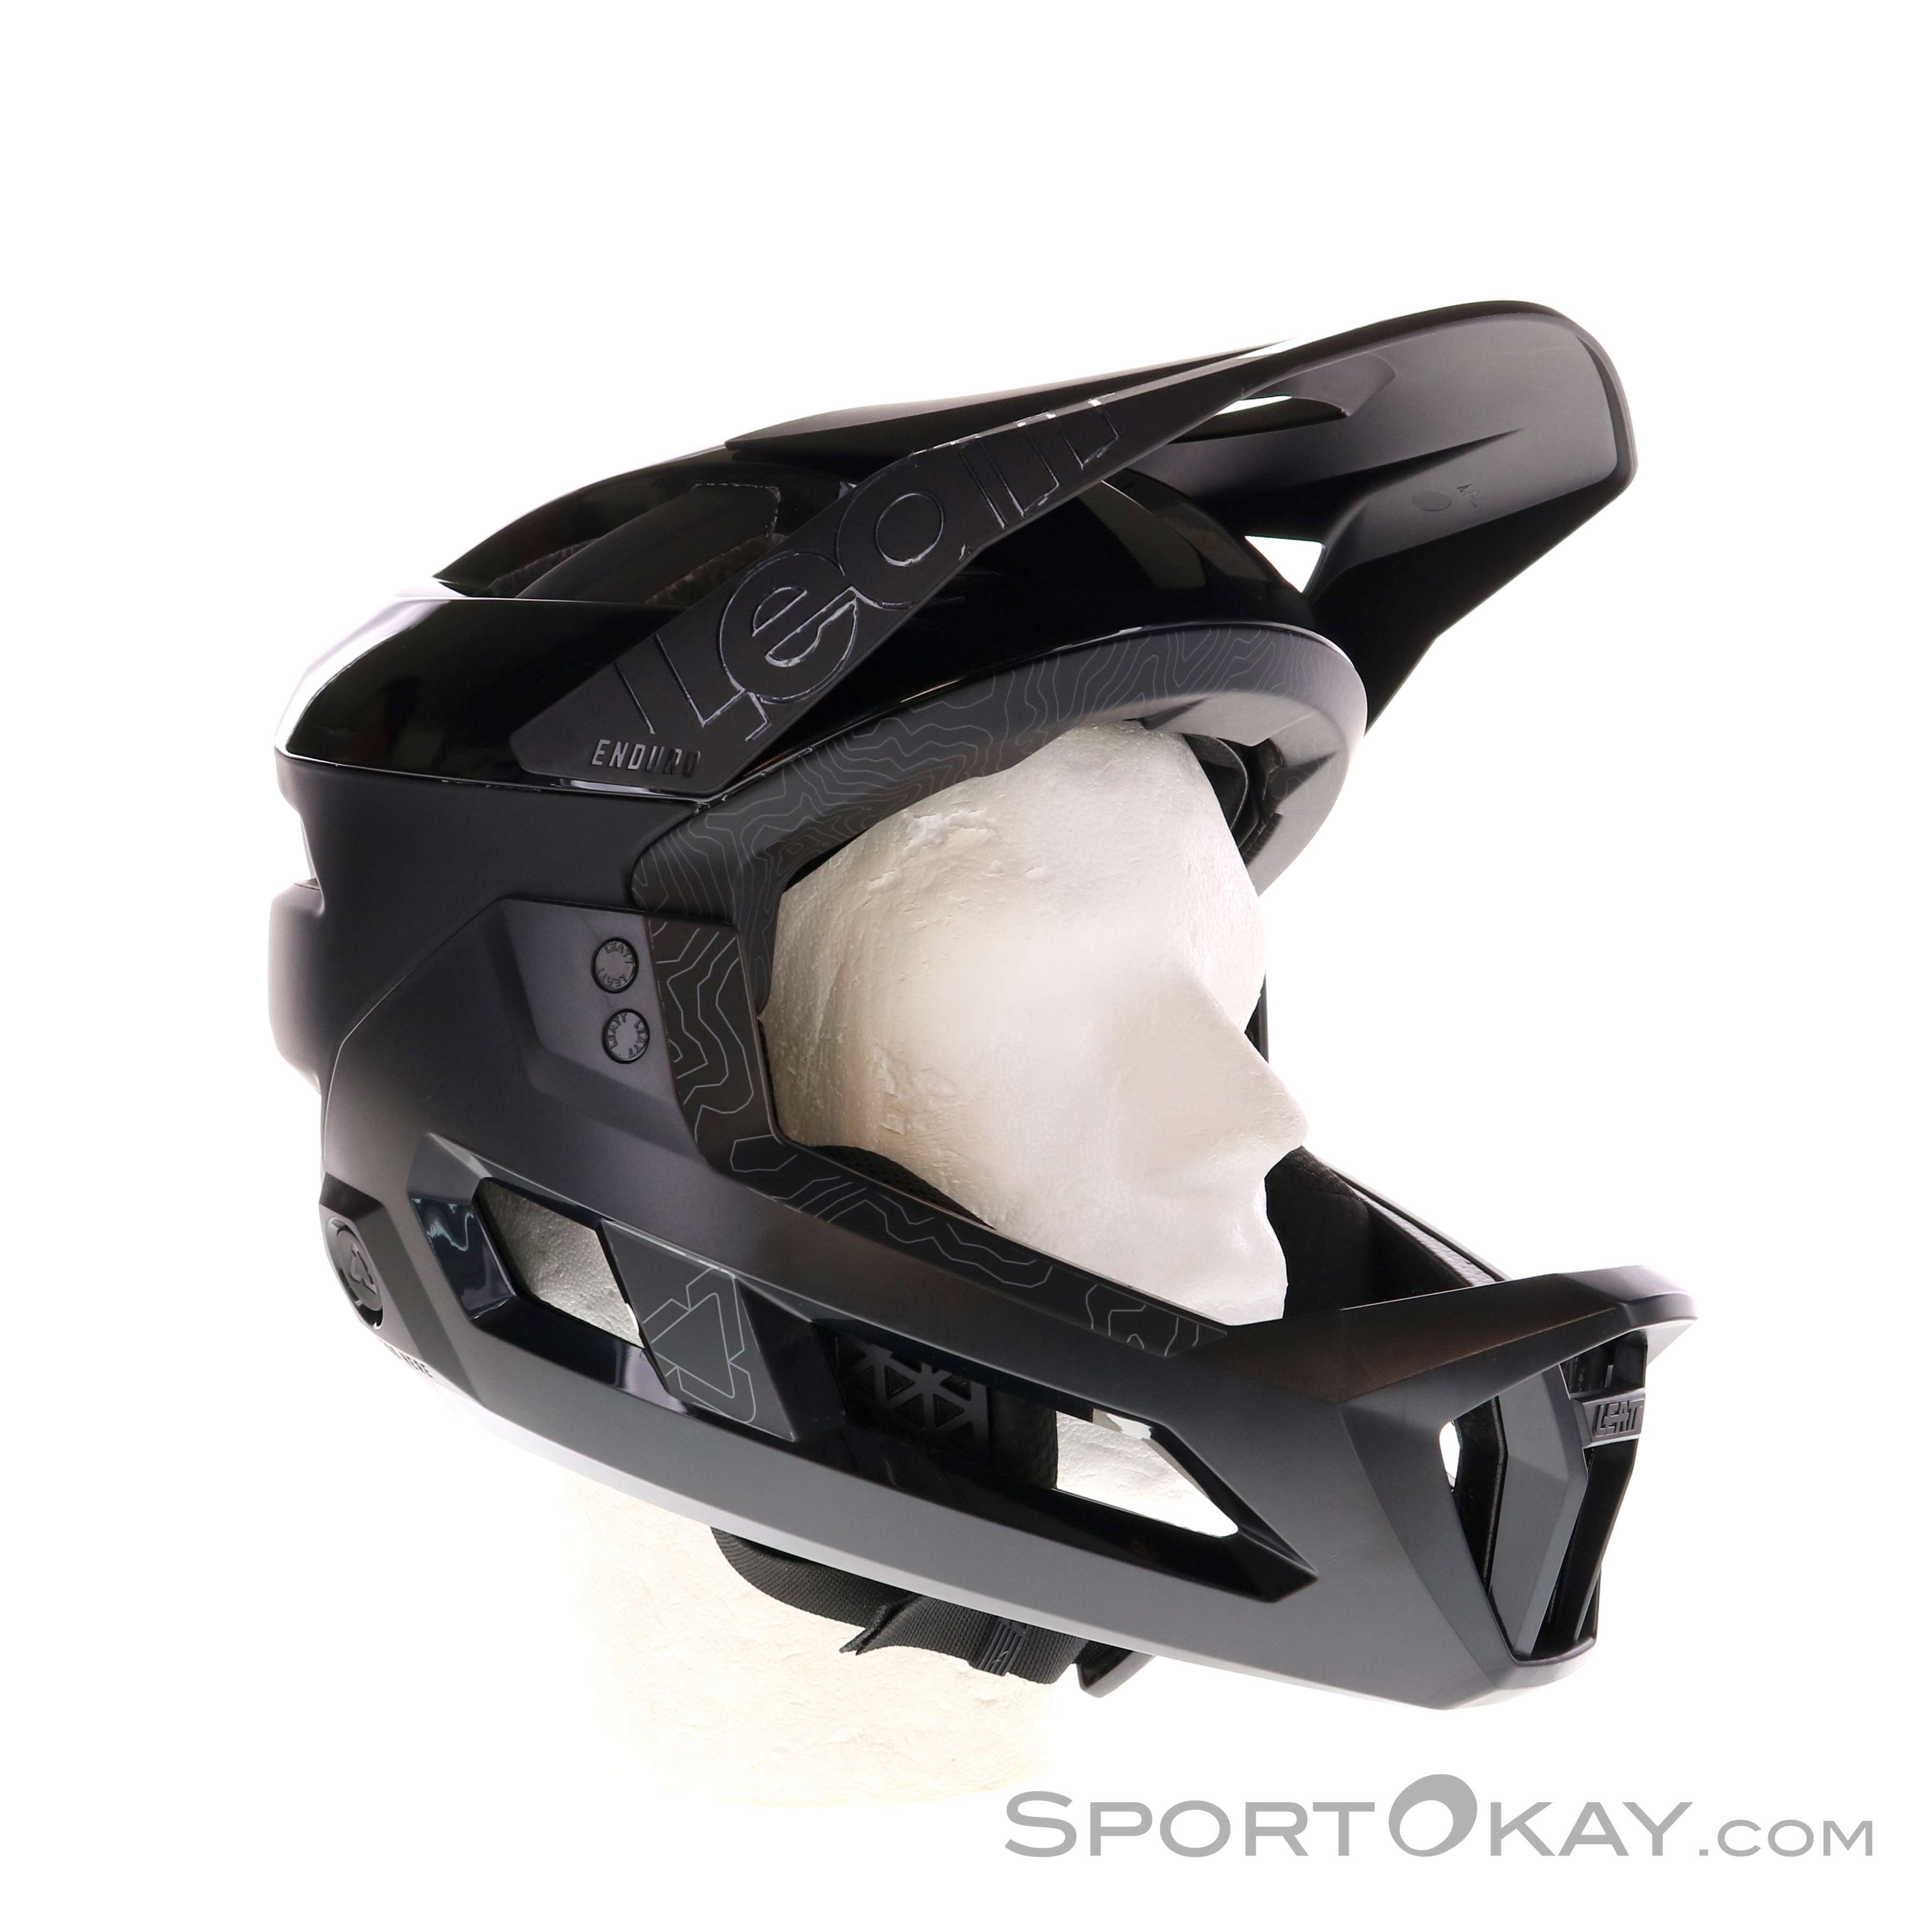 Leatt MTB Enduro 3.0 Fullface Helm - Downhill & Freeride